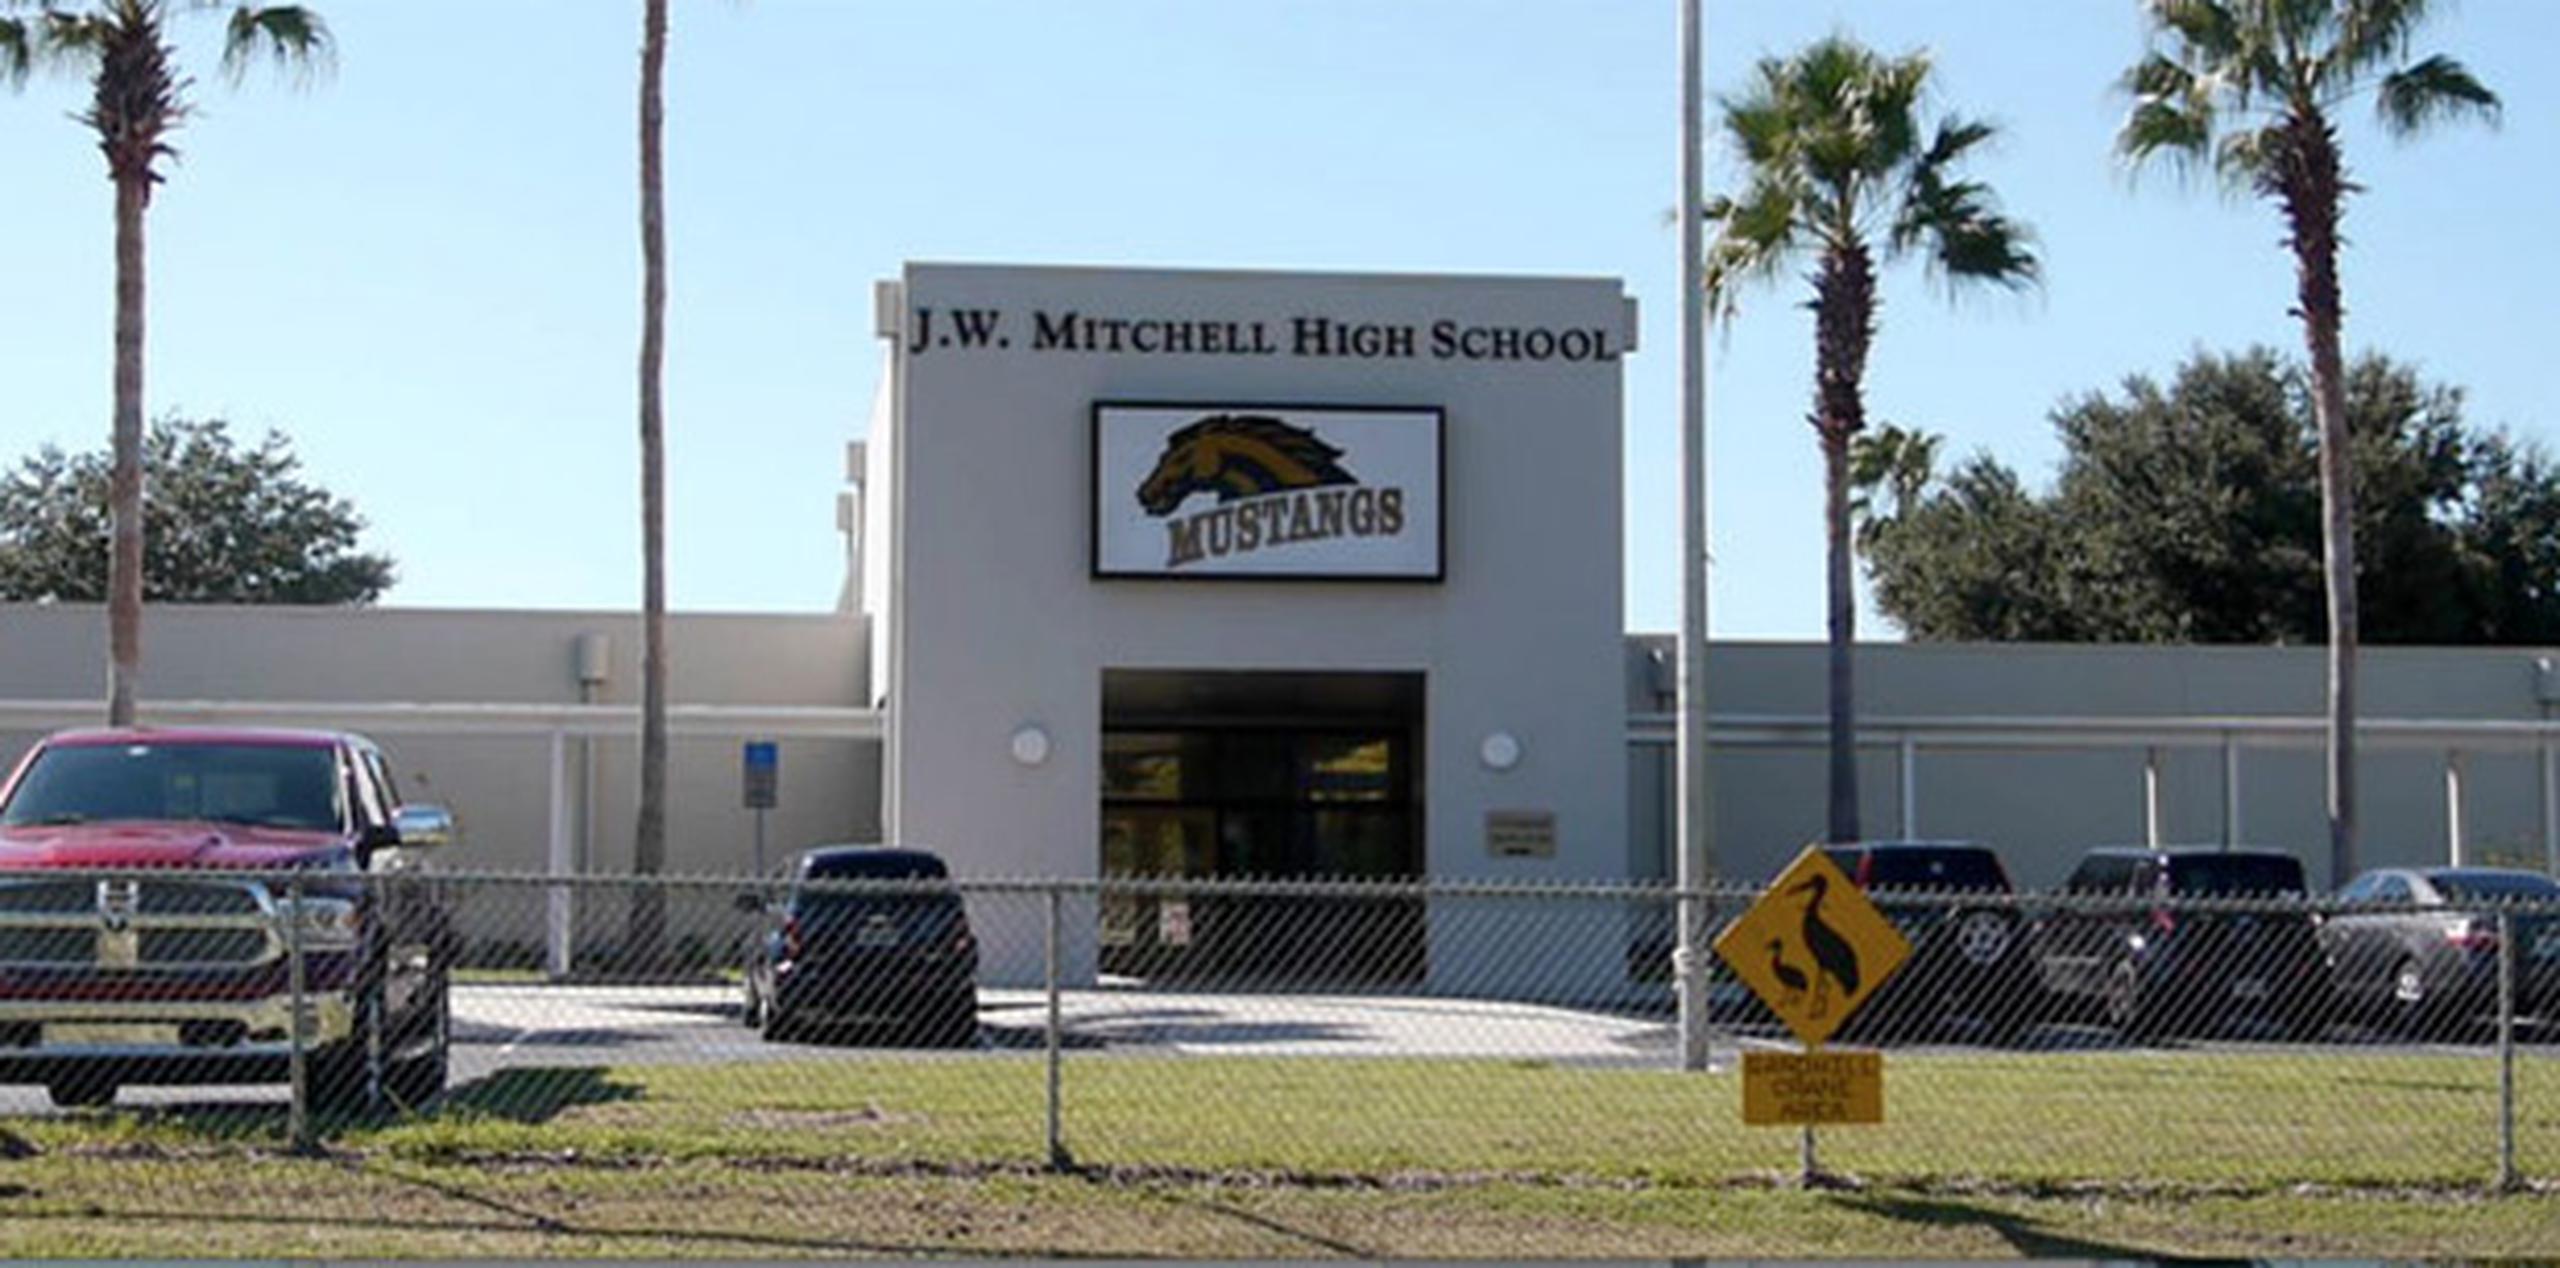 El maestro le informó su decisión a los padres de los alumnos de JW MItchell High Shool, en New Port Richey, Florida.